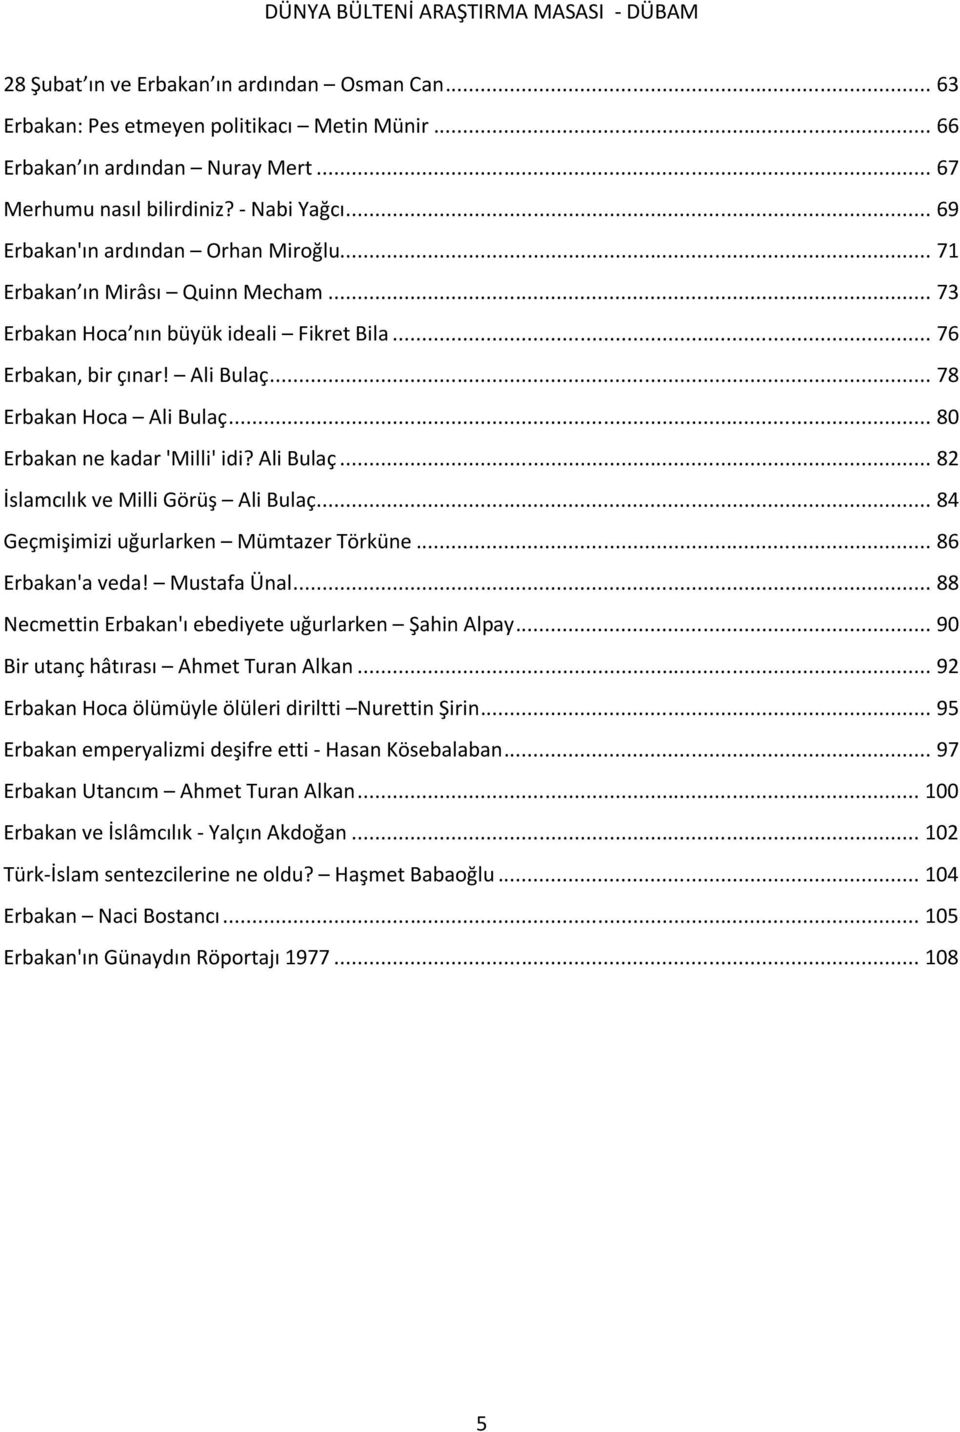 .. 80 Erbakan ne kadar 'Milli' idi? Ali Bulaç... 82 İslamcılık ve Milli Görüş Ali Bulaç... 84 Geçmişimizi uğurlarken Mümtazer Törküne... 86 Erbakan'a veda! Mustafa Ünal.